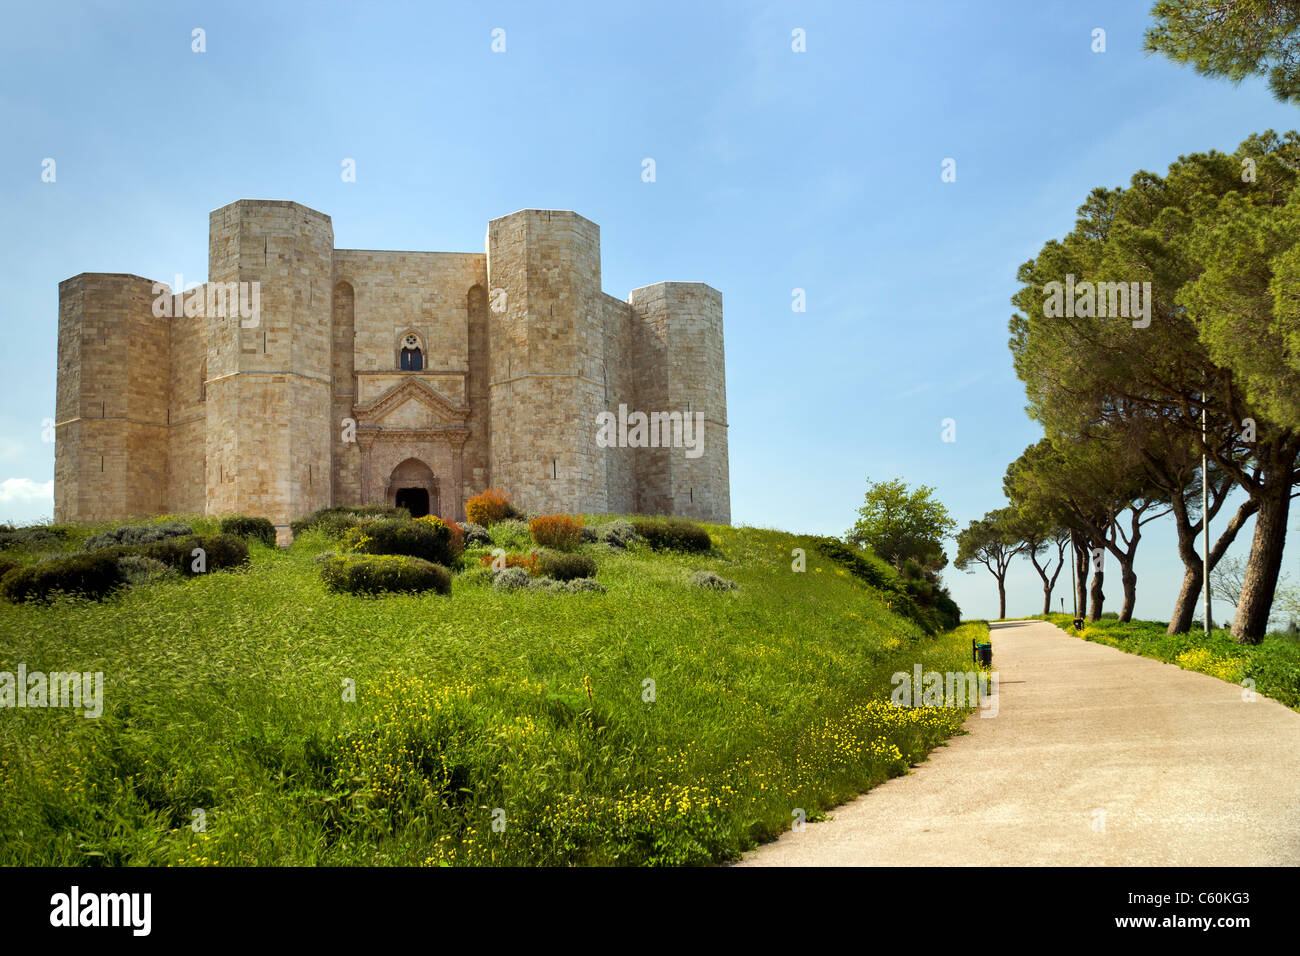 Castel del Monte, les Pouilles, Italie du sud. Château du 13ème siècle situé à andria Banque D'Images